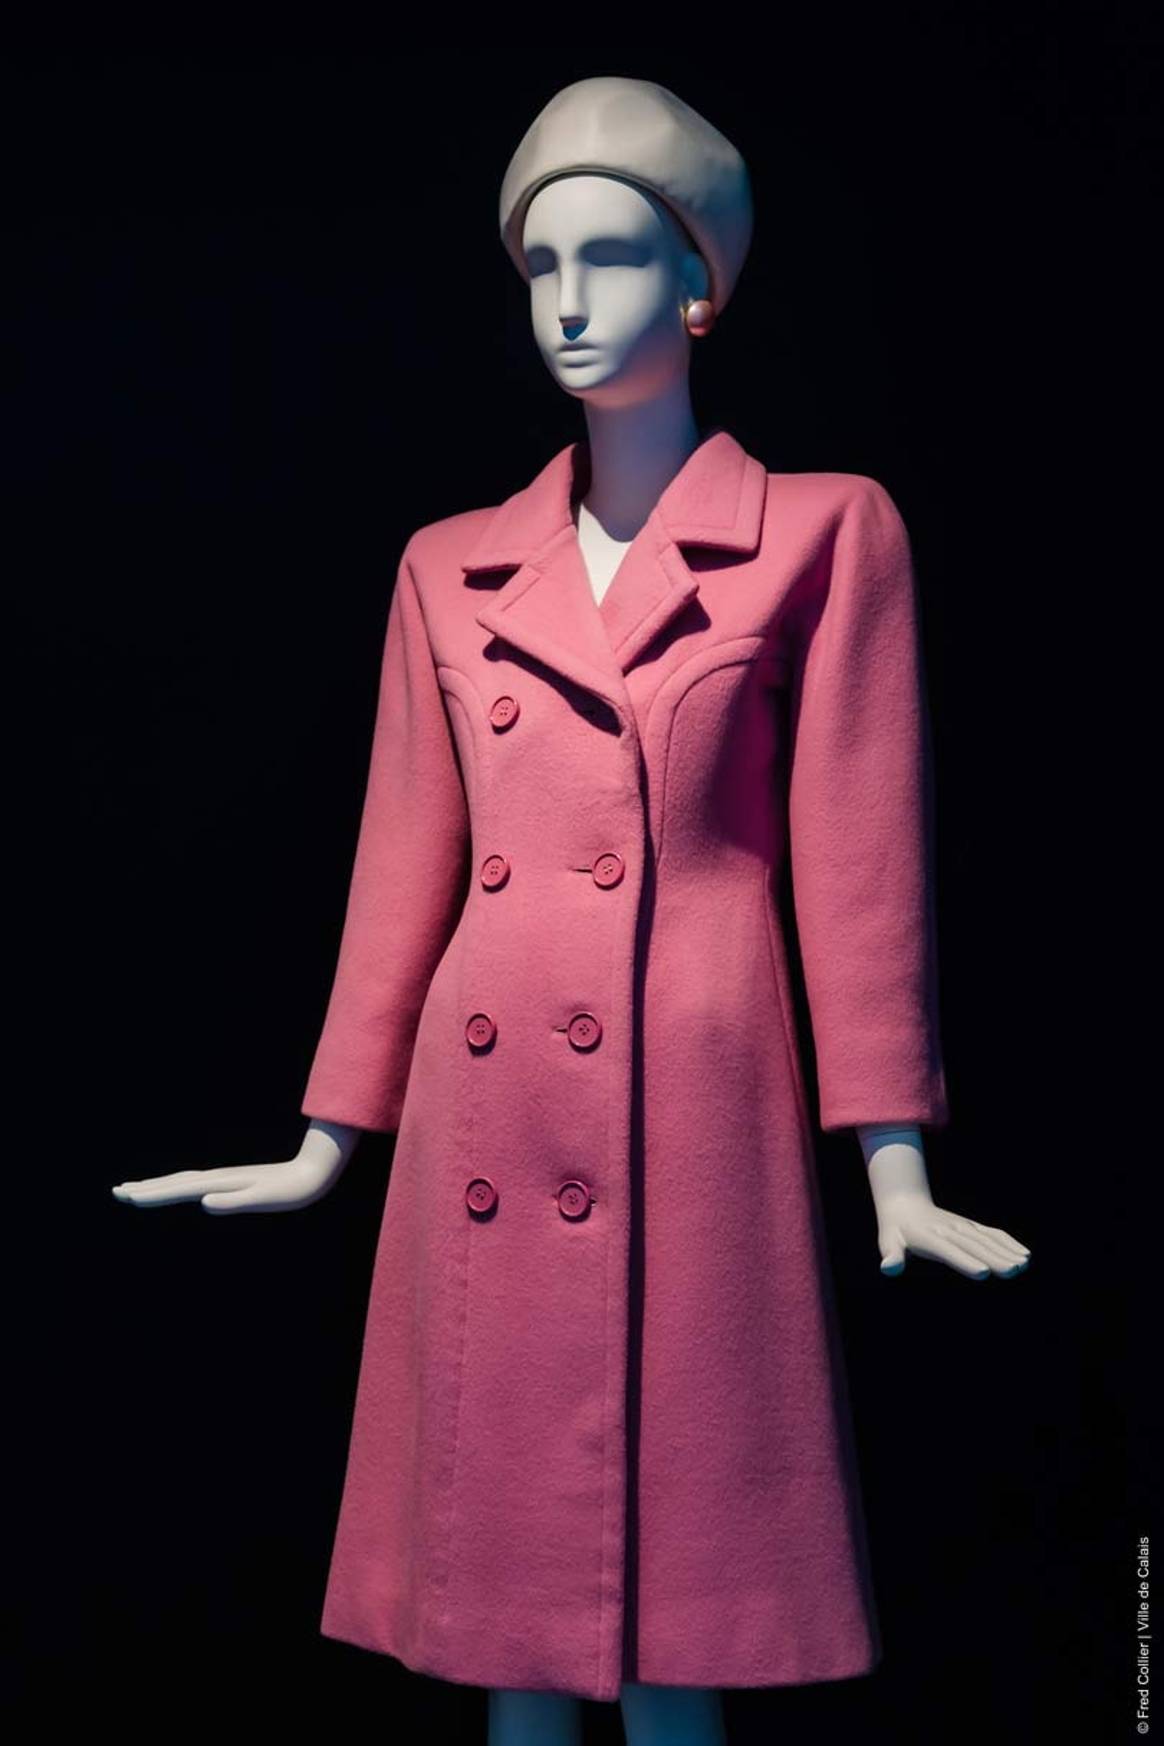 En image : la rétrospective d'Hubert de Givenchy